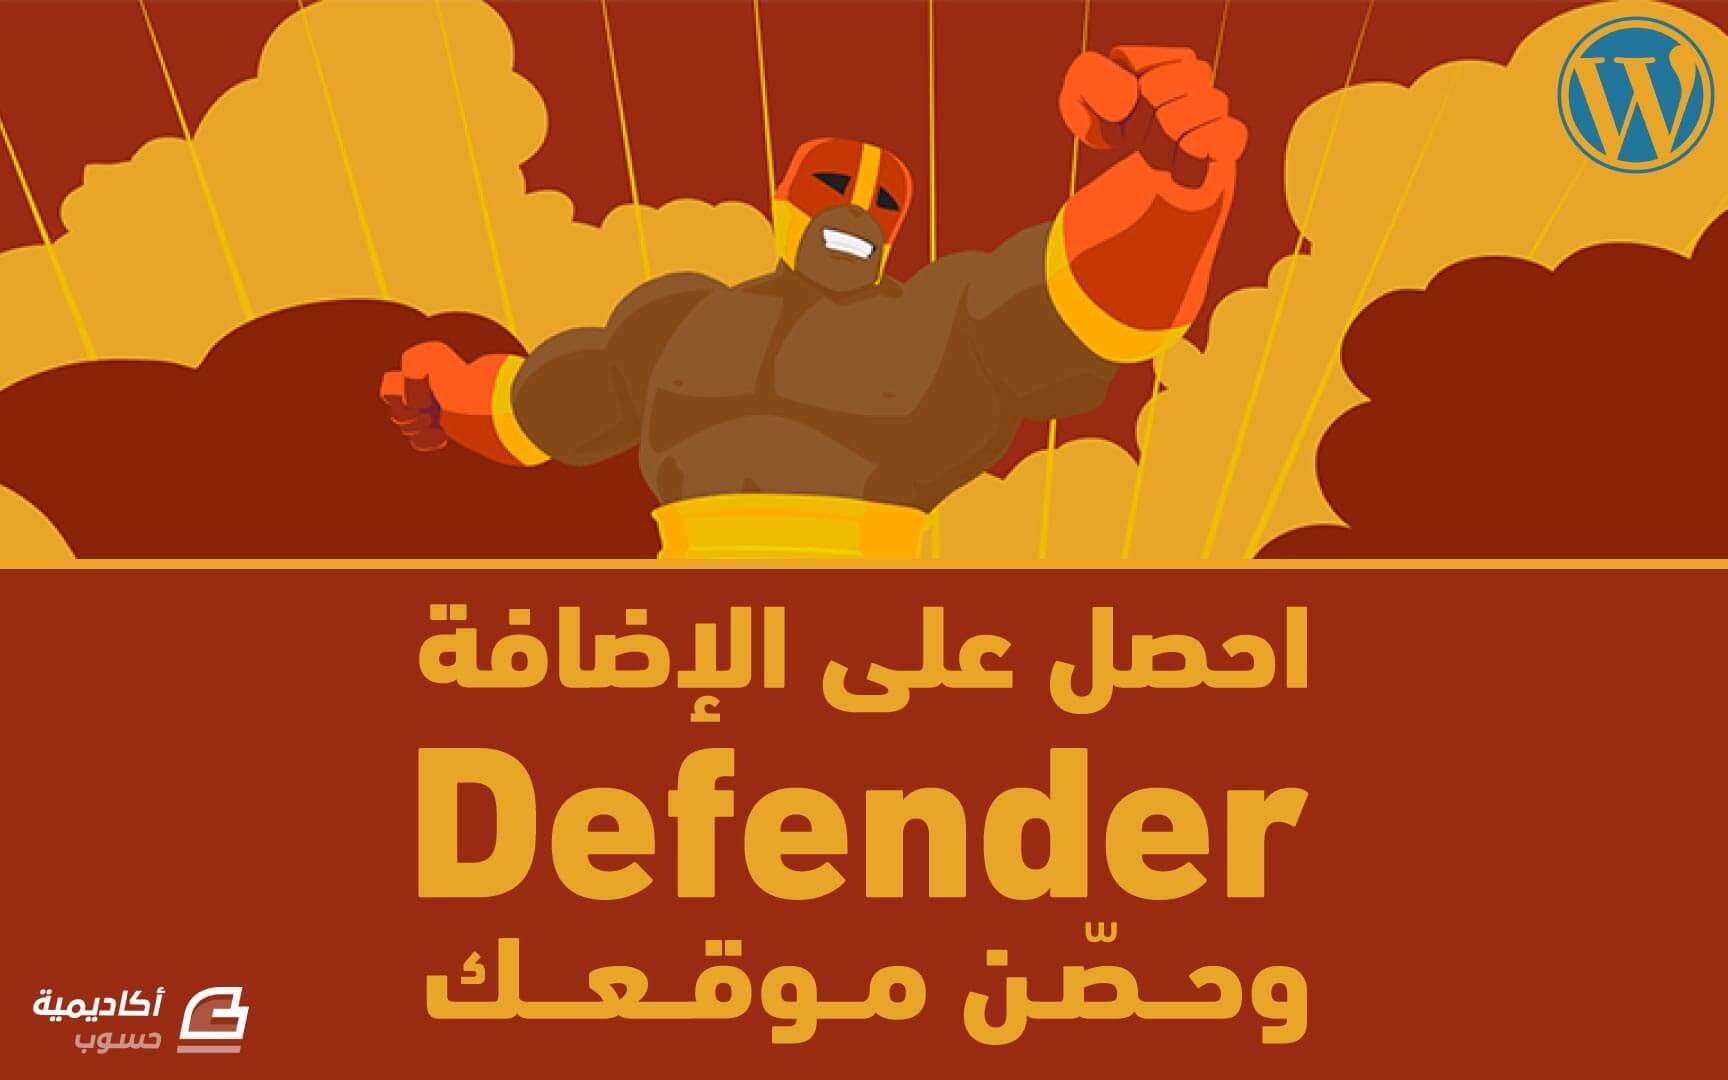 مزيد من المعلومات حول "احصل على الإضافة Defender وحصن موقعك"